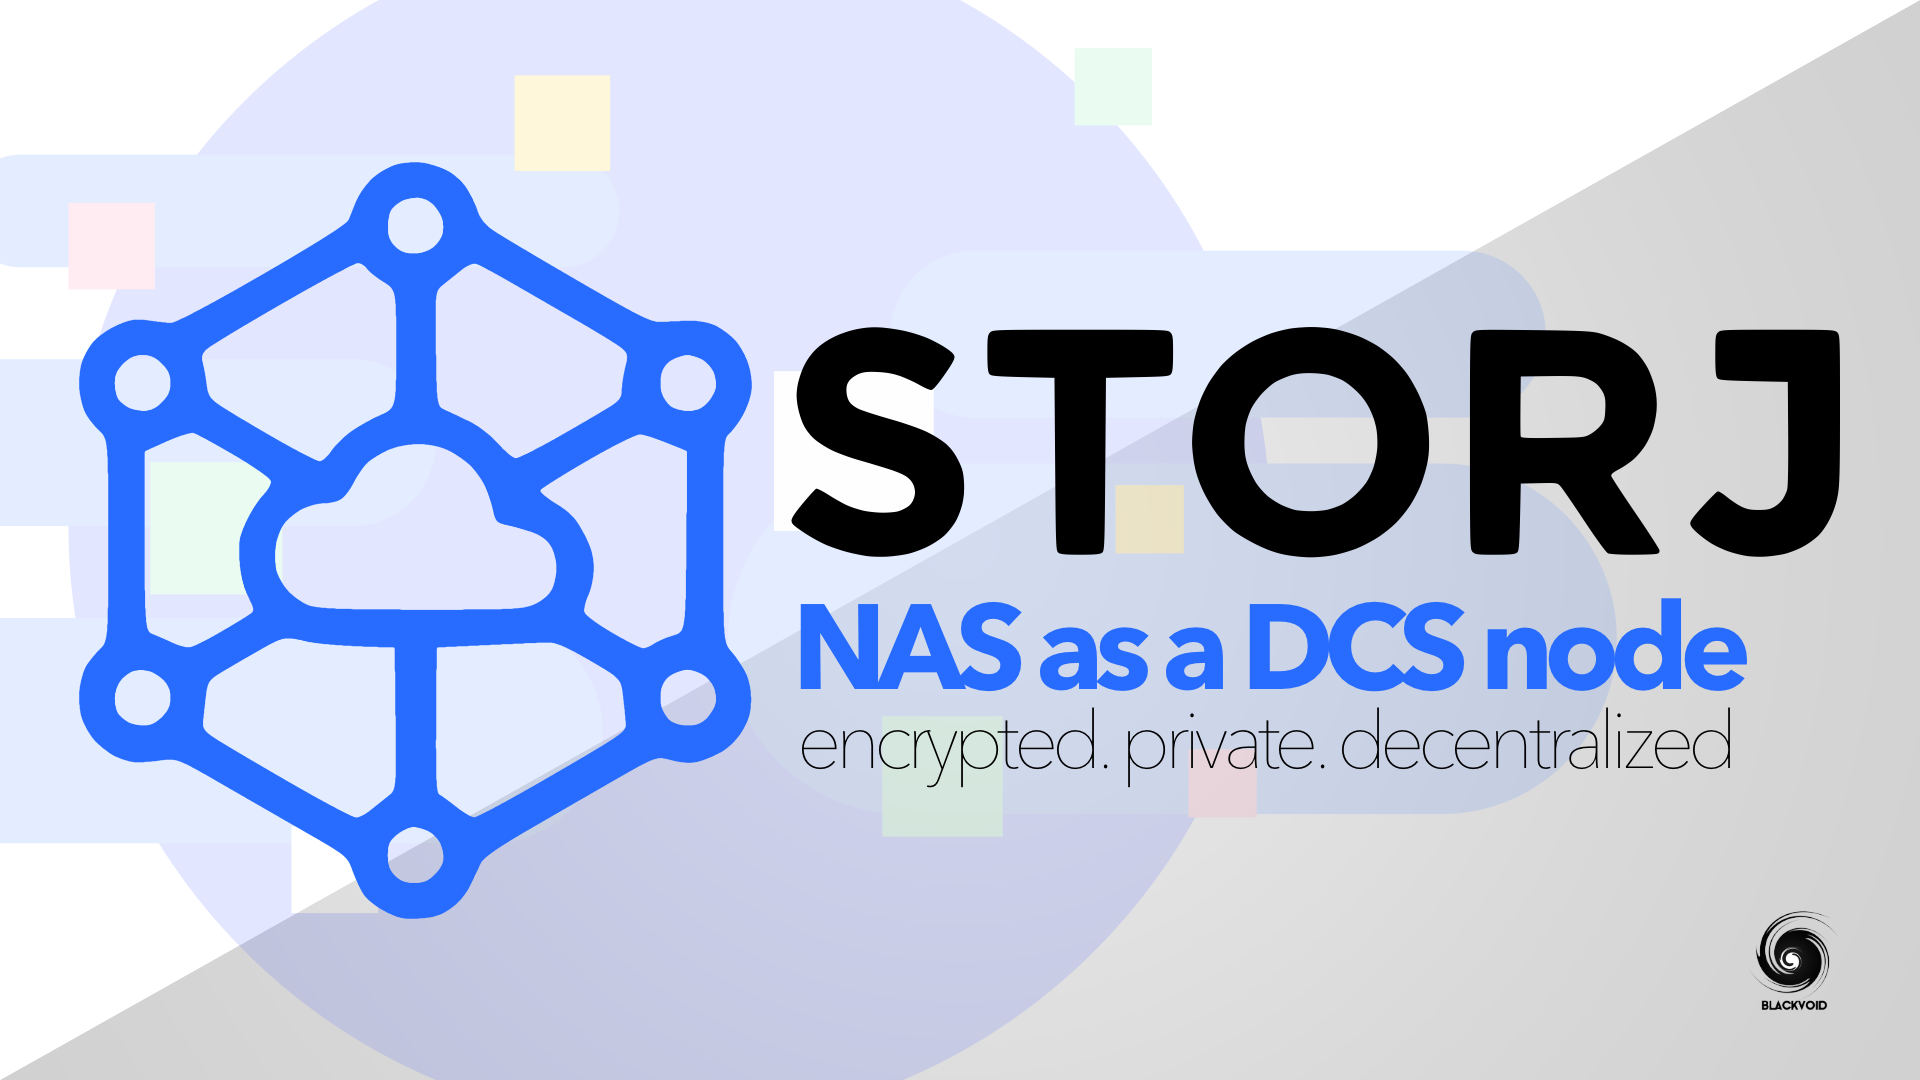 STORJ - NAS as a DCS node